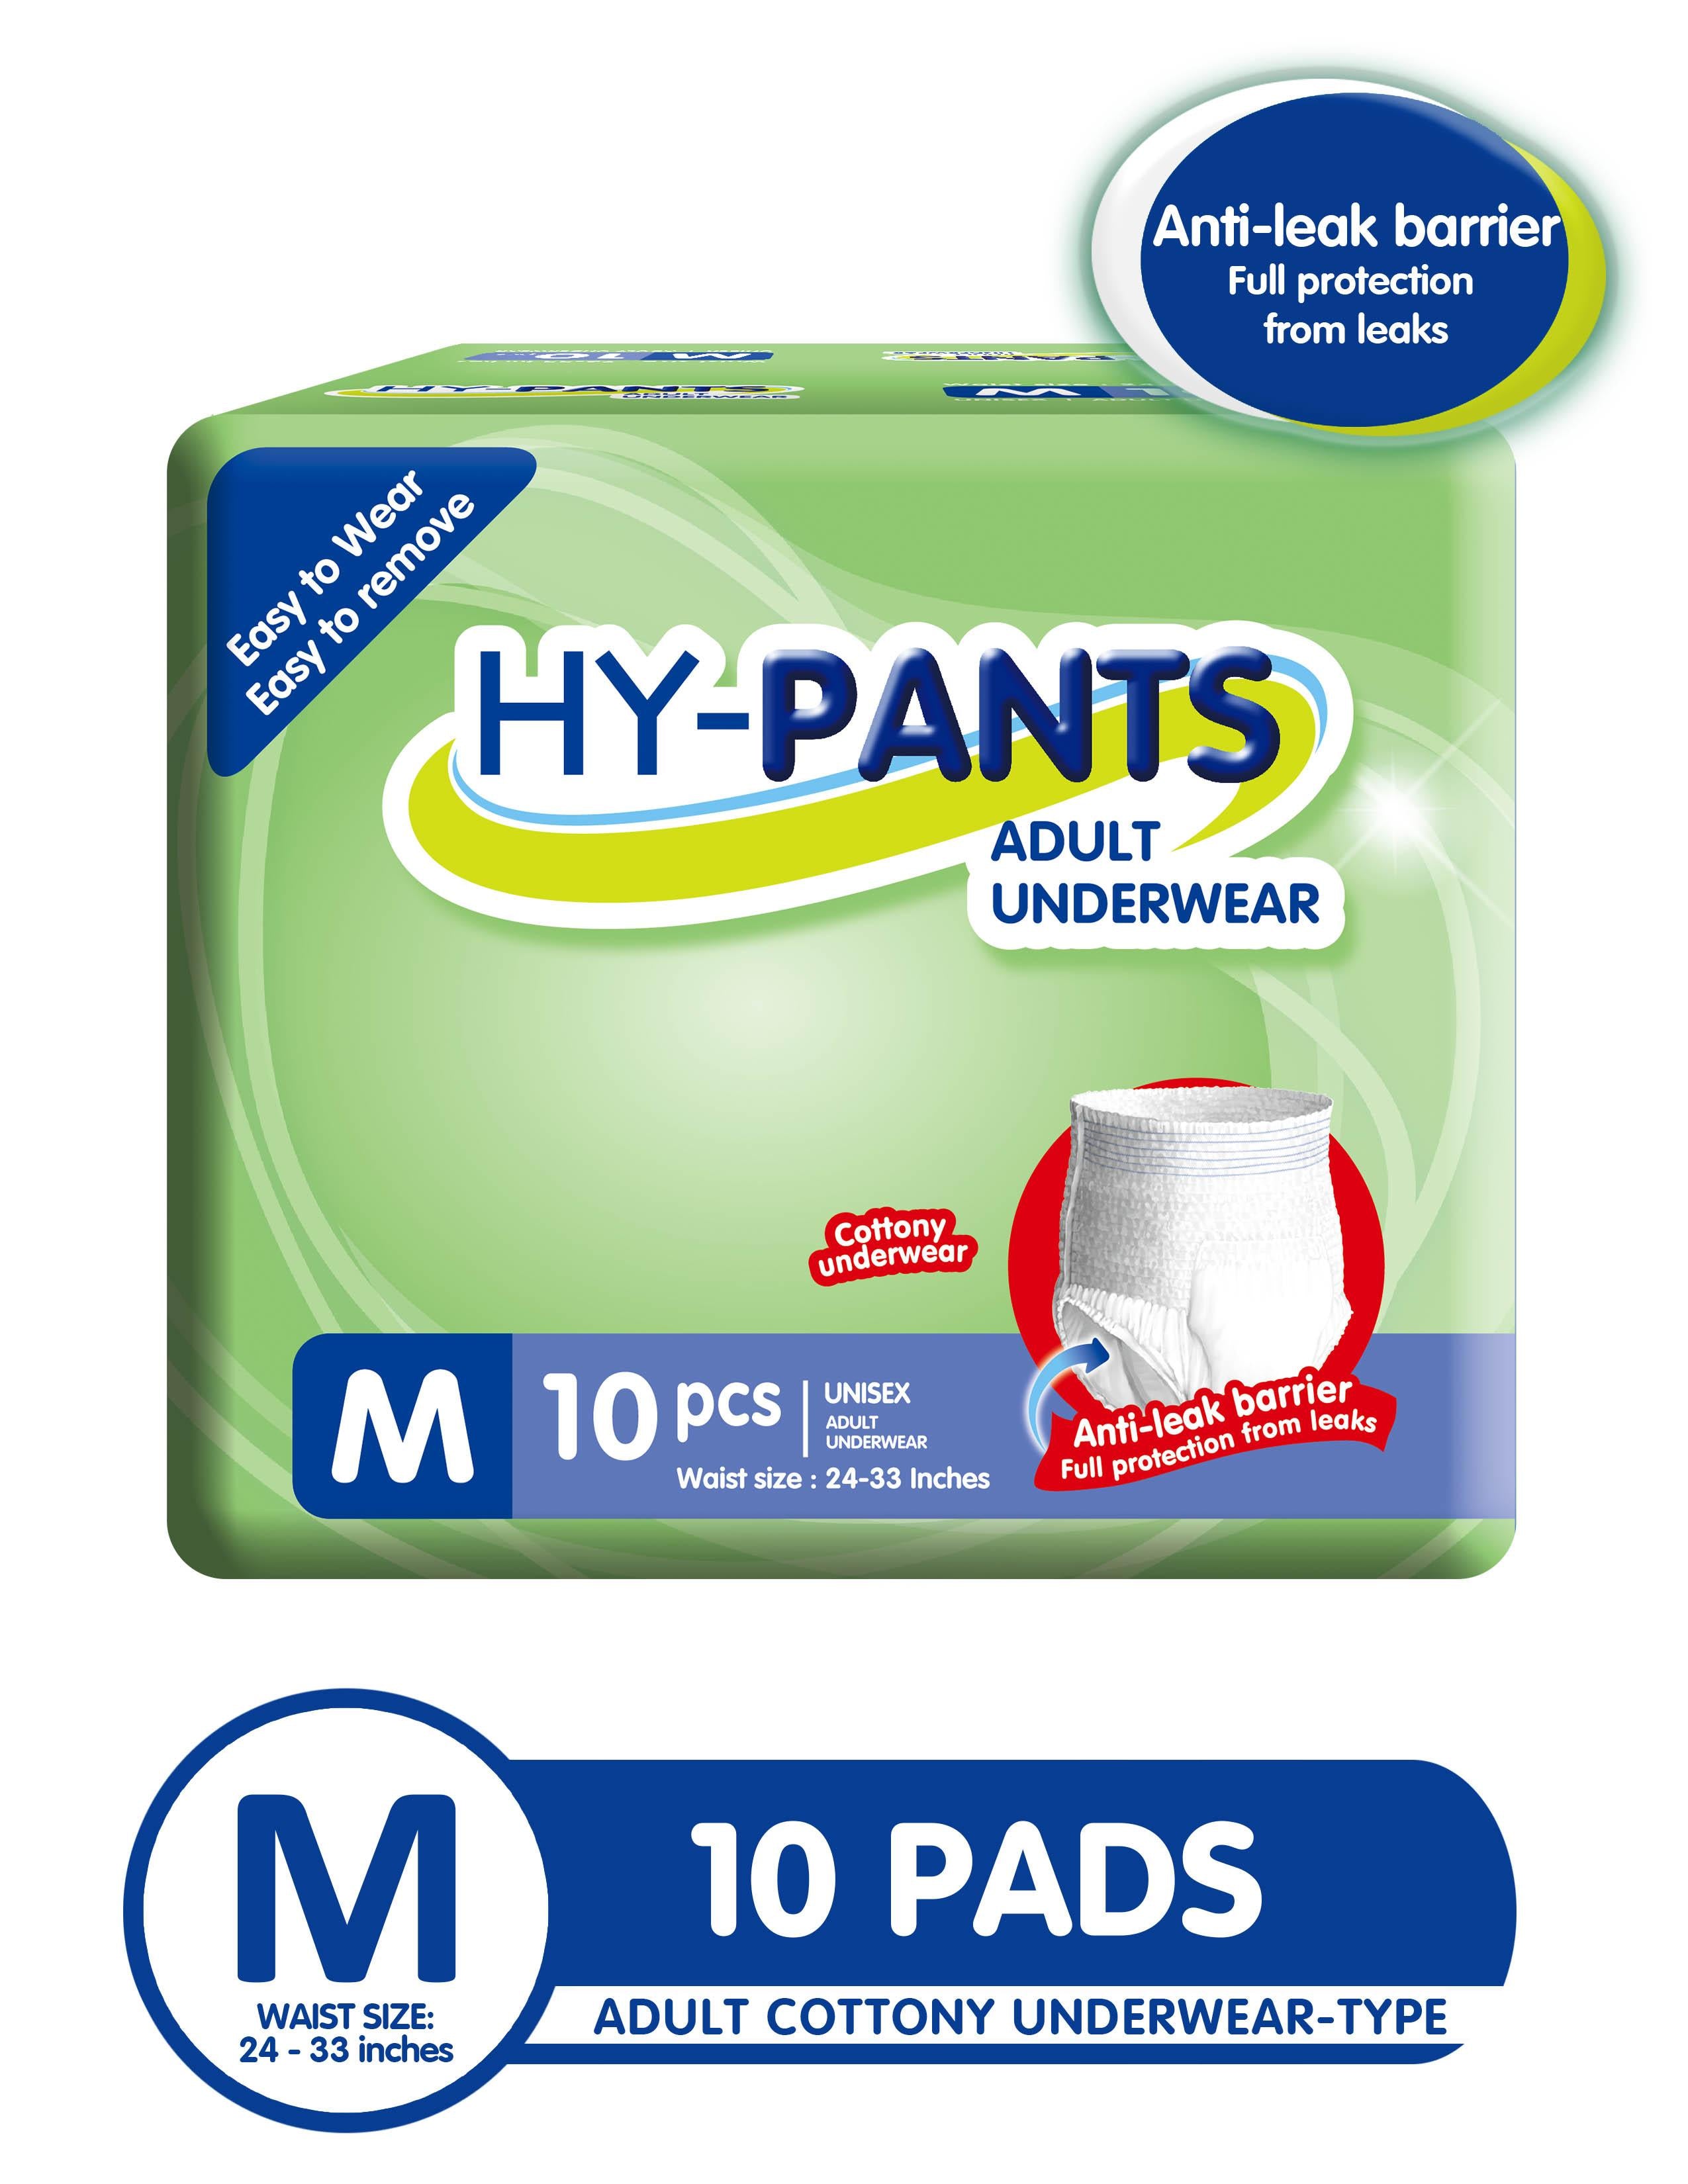 Hy-pants Adult Underwear Medium - 2 Packs (20 Pads)